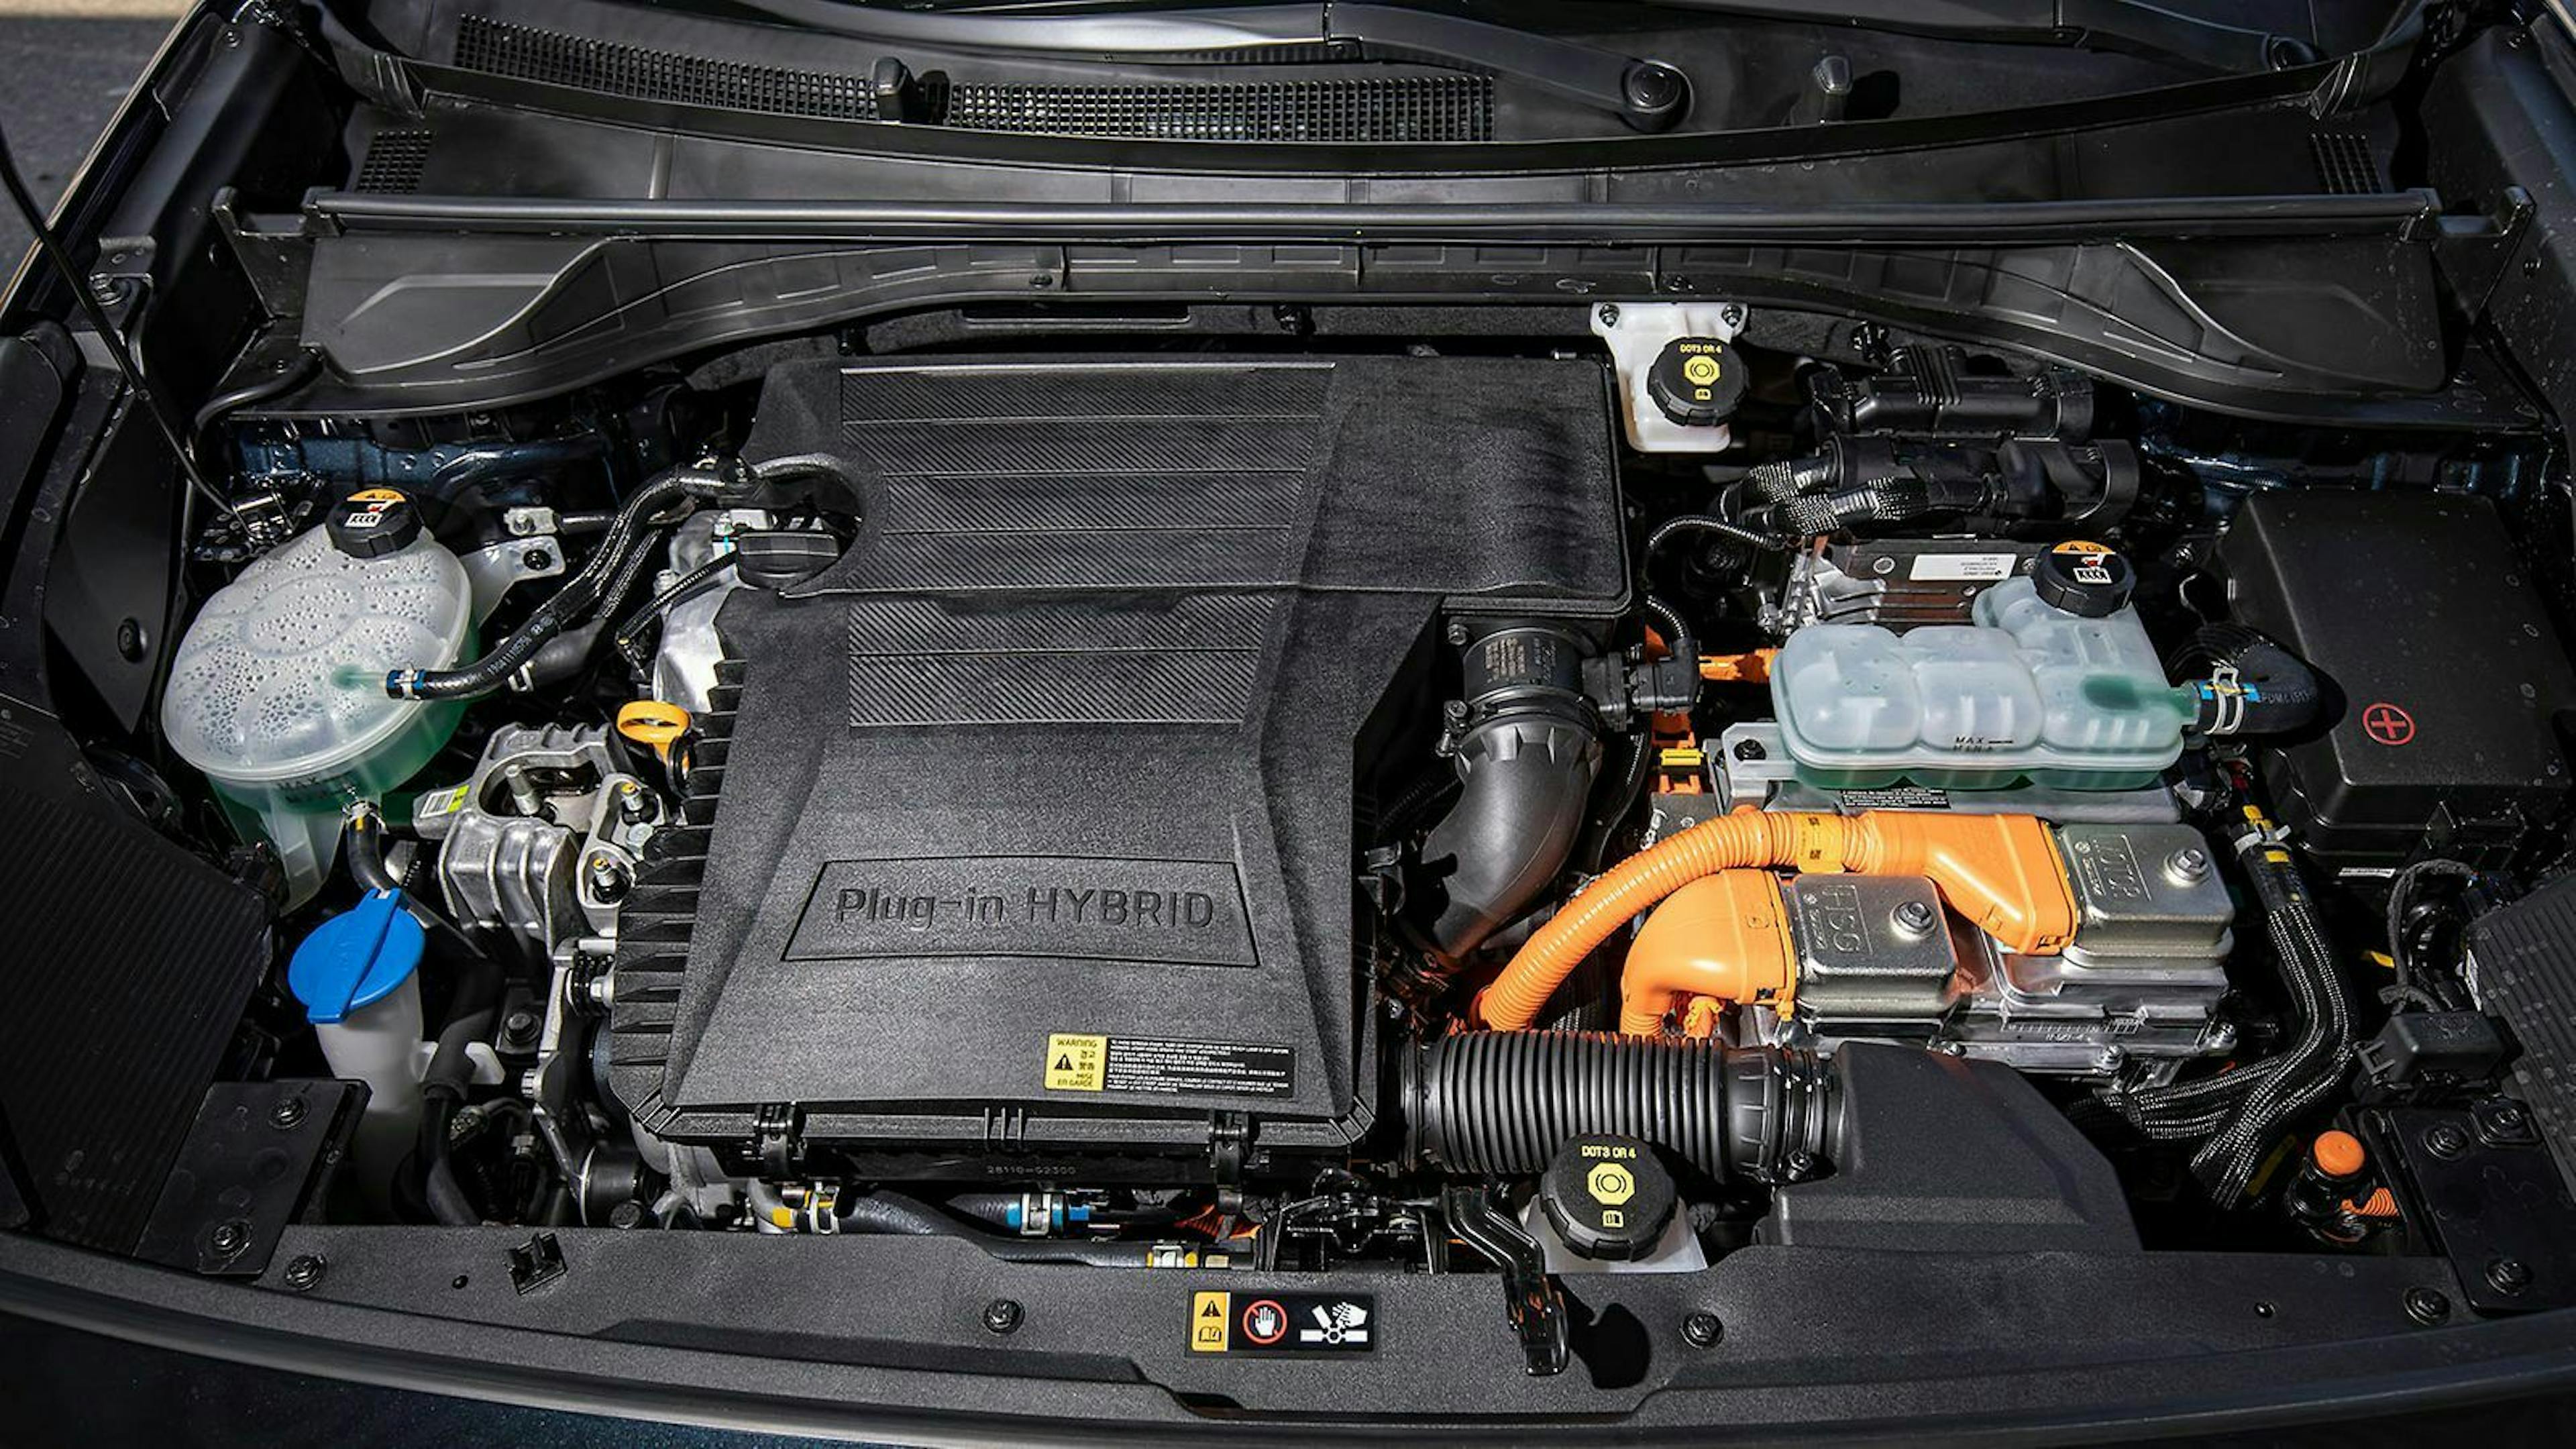 Beim Kia Niro Plug-In ist der E-Motor stärker und der Akku größer. Der Verbrenner ist bei beiden Modellen identisch